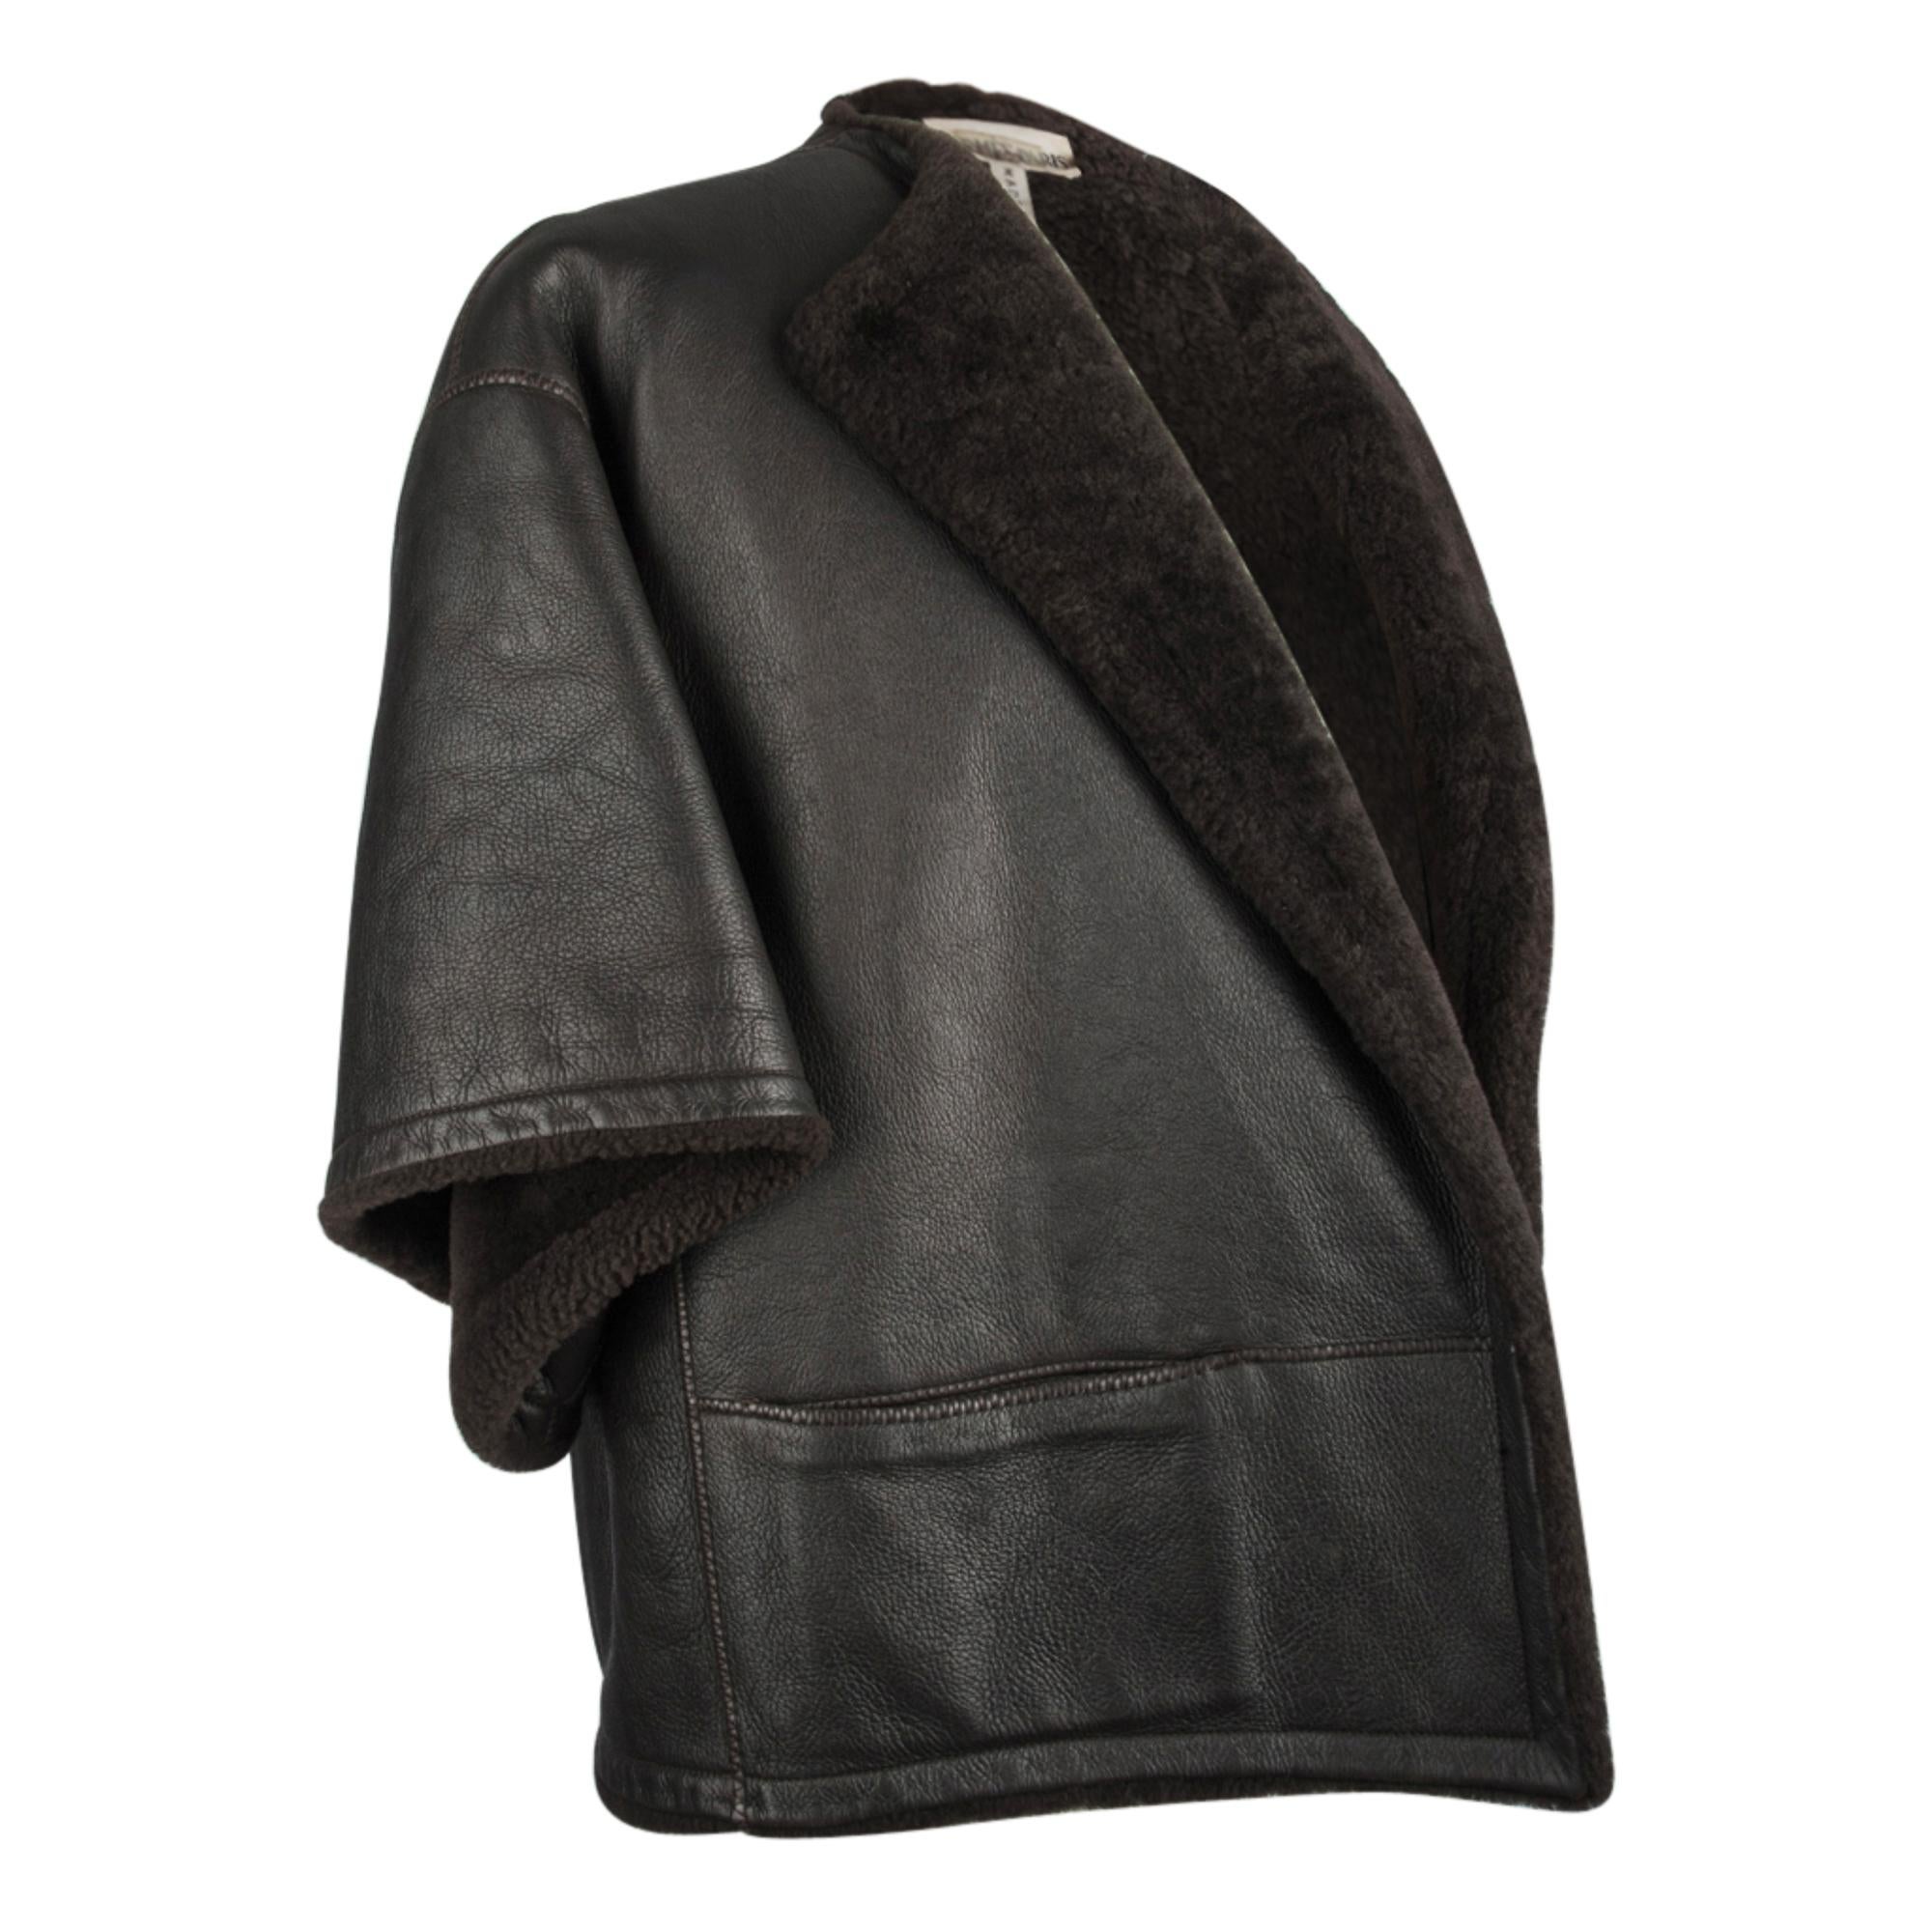 Garantiert authentische Hermes reiche braune Leder Shearling Capelet Stil Jacke.  
Dunkelbraune Jacke aus Shearling mit überschnittenen Schultern und weiten Ärmeln in 3/4-Länge.
2 Schrägstrich-Taschen vorne.
Offen - kein Verschluss. 
So